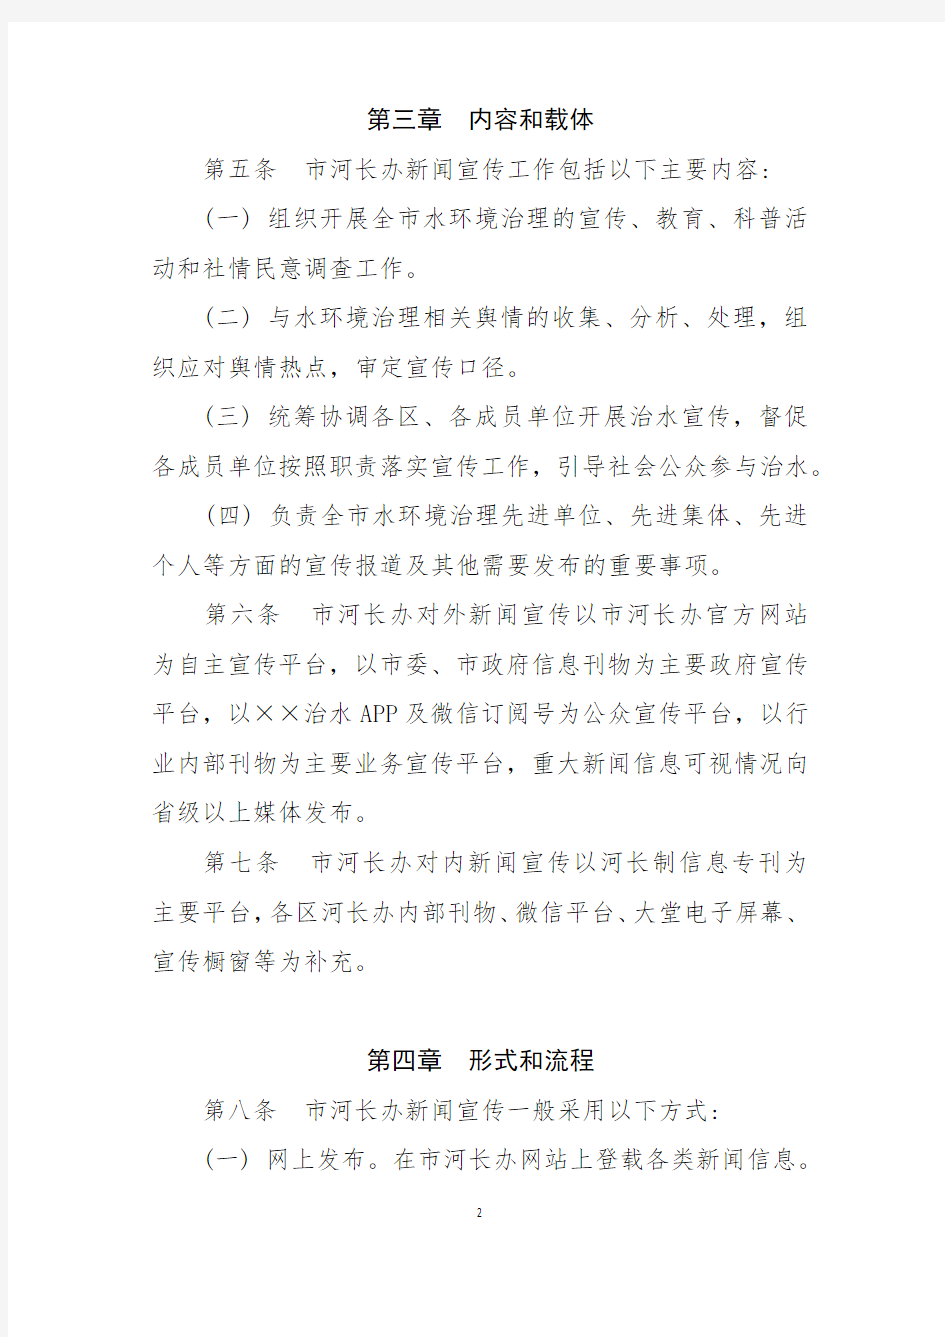 副Sheng级市河长制办公室新闻宣传组工作手册(经典范例)